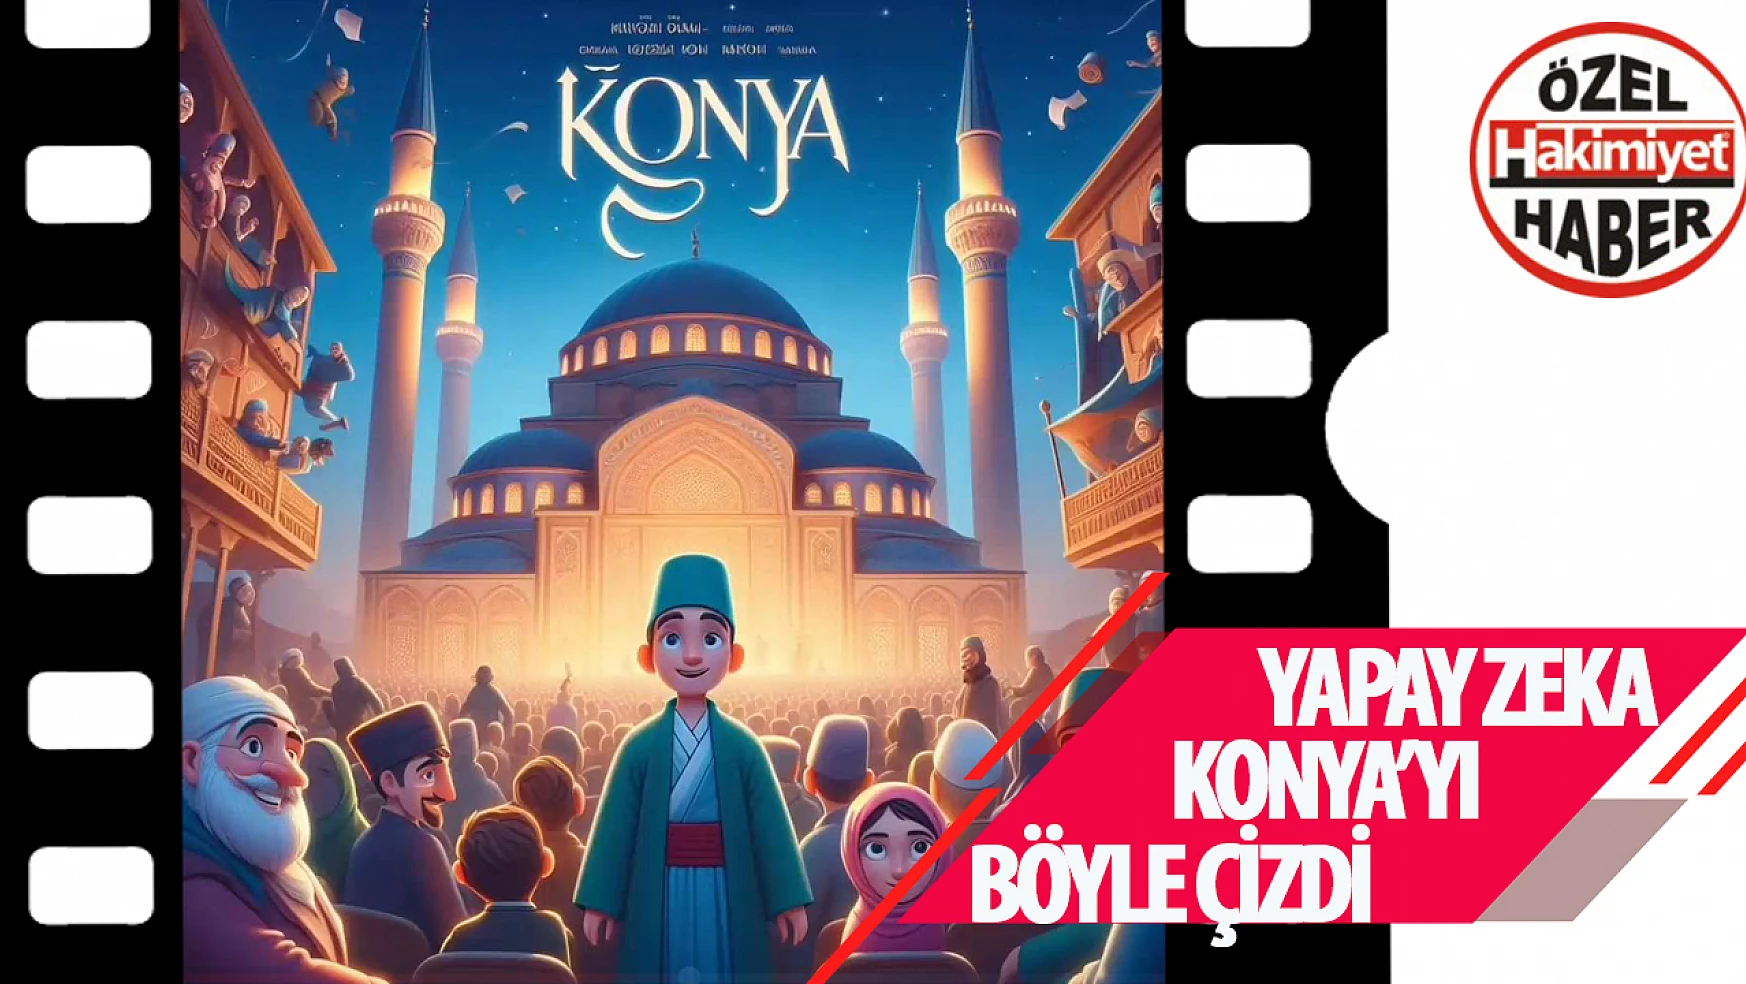 Yapay Zeka, Türkiye'nin Şehirlerini Büyüleyici Afişlere Dönüştürdü: Konya'nın Çizimi Çok Beğenildi